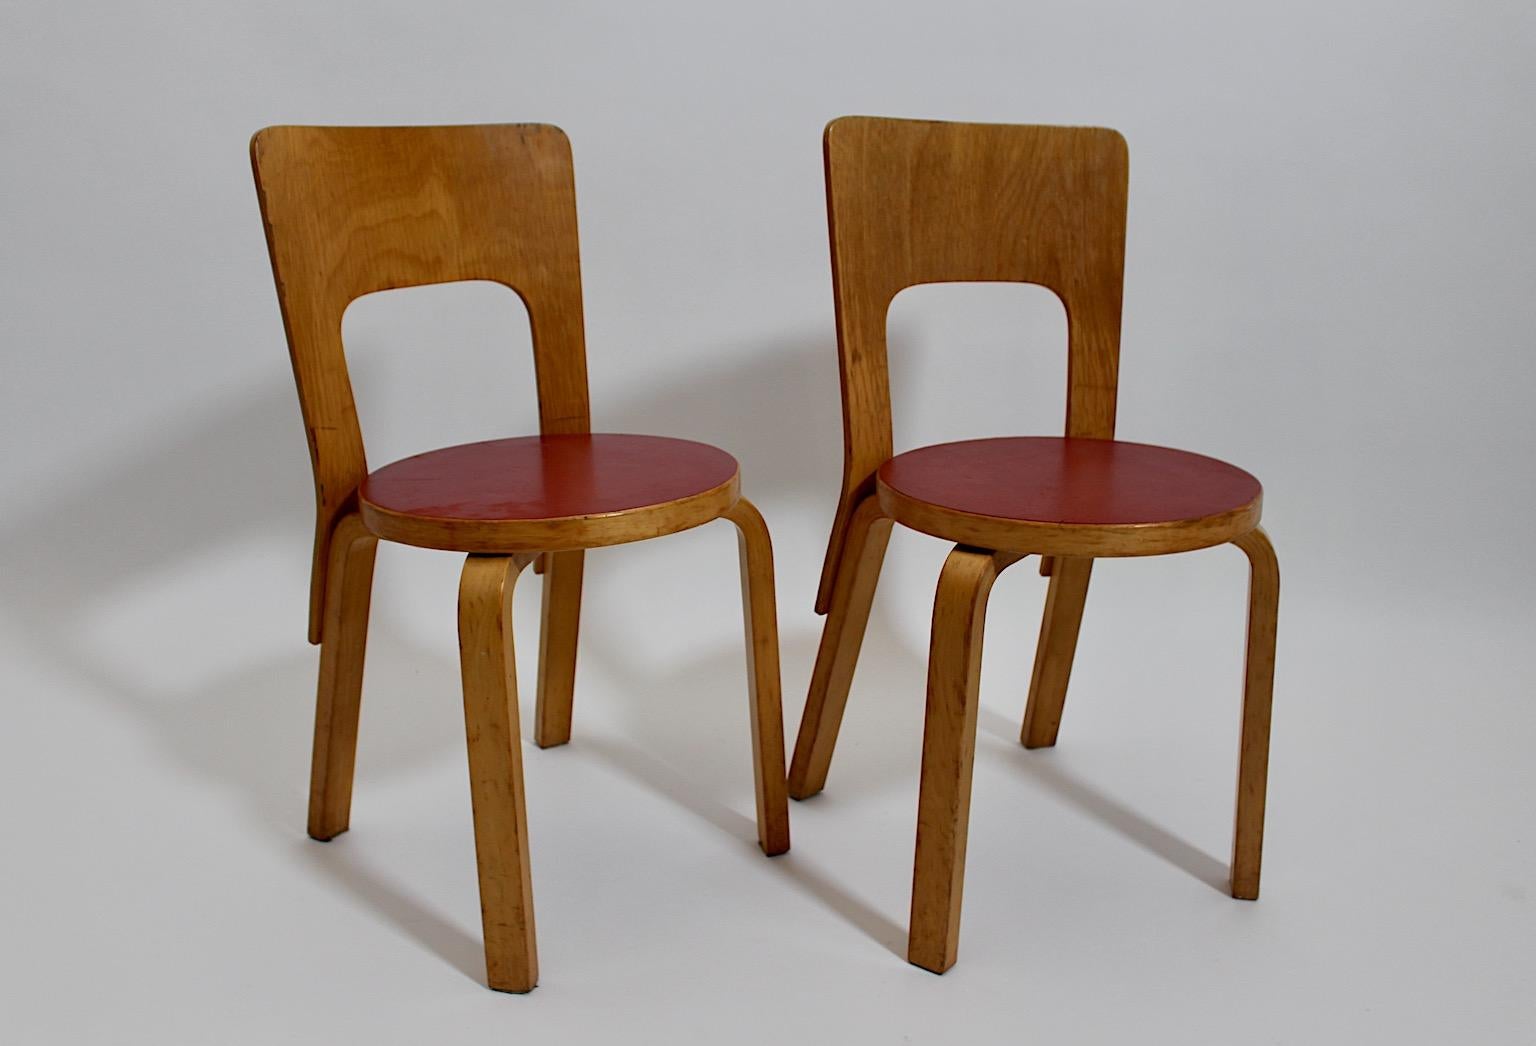 Alvar Aalto Scandinavian modern vintage authentic duo pair model 66 aus lackierter Birke und rotem Laminat 1930er Jahre, Finnland.
Ein frühes Modell des Stuhls 66 von Alvar Aalto für Artek mit großartigem minimalistischem Design aus Birke in einem